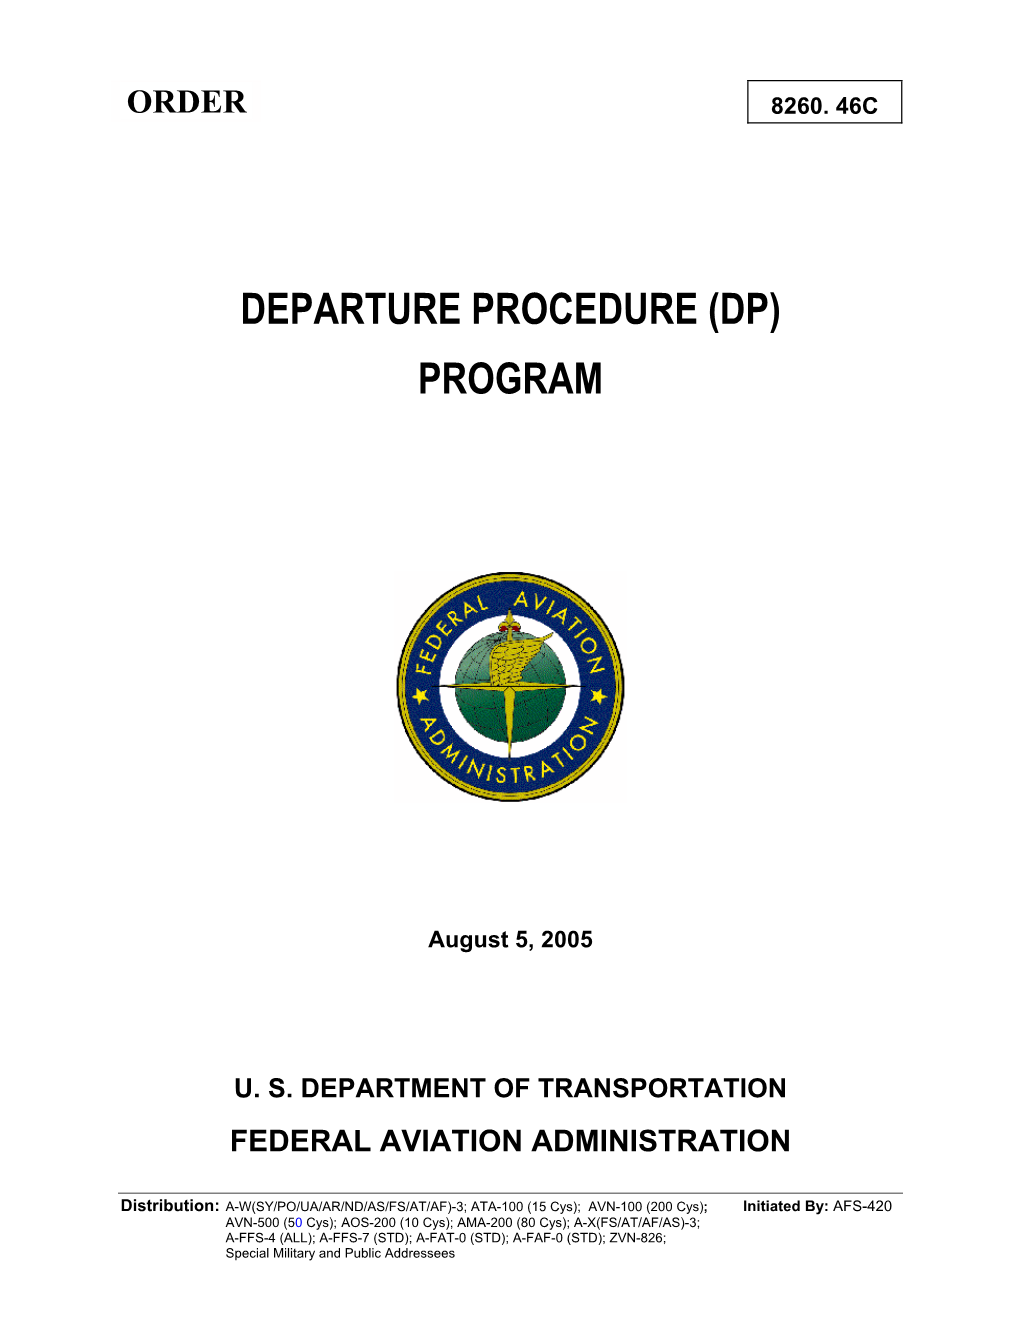 Departure Procedure (Dp) Program